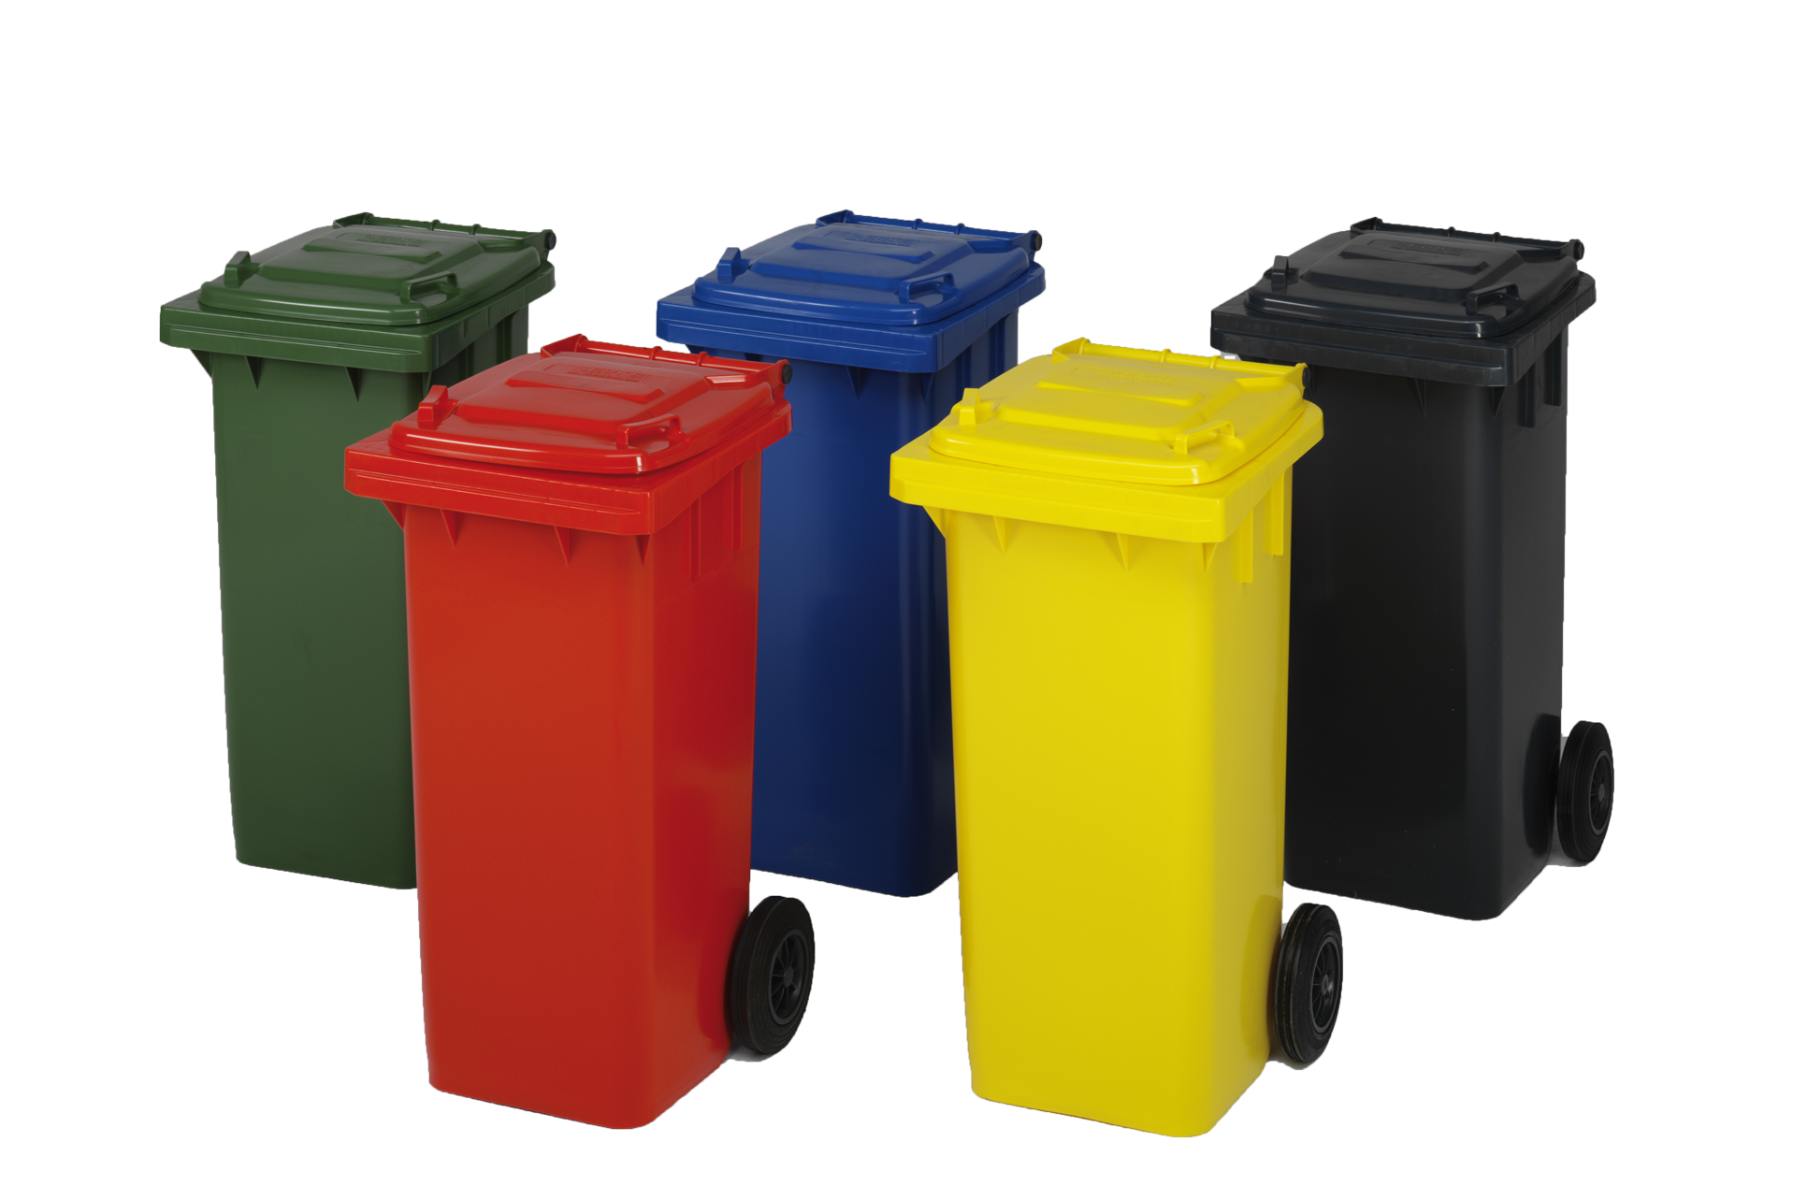 Diffrent colours of wheelie bins